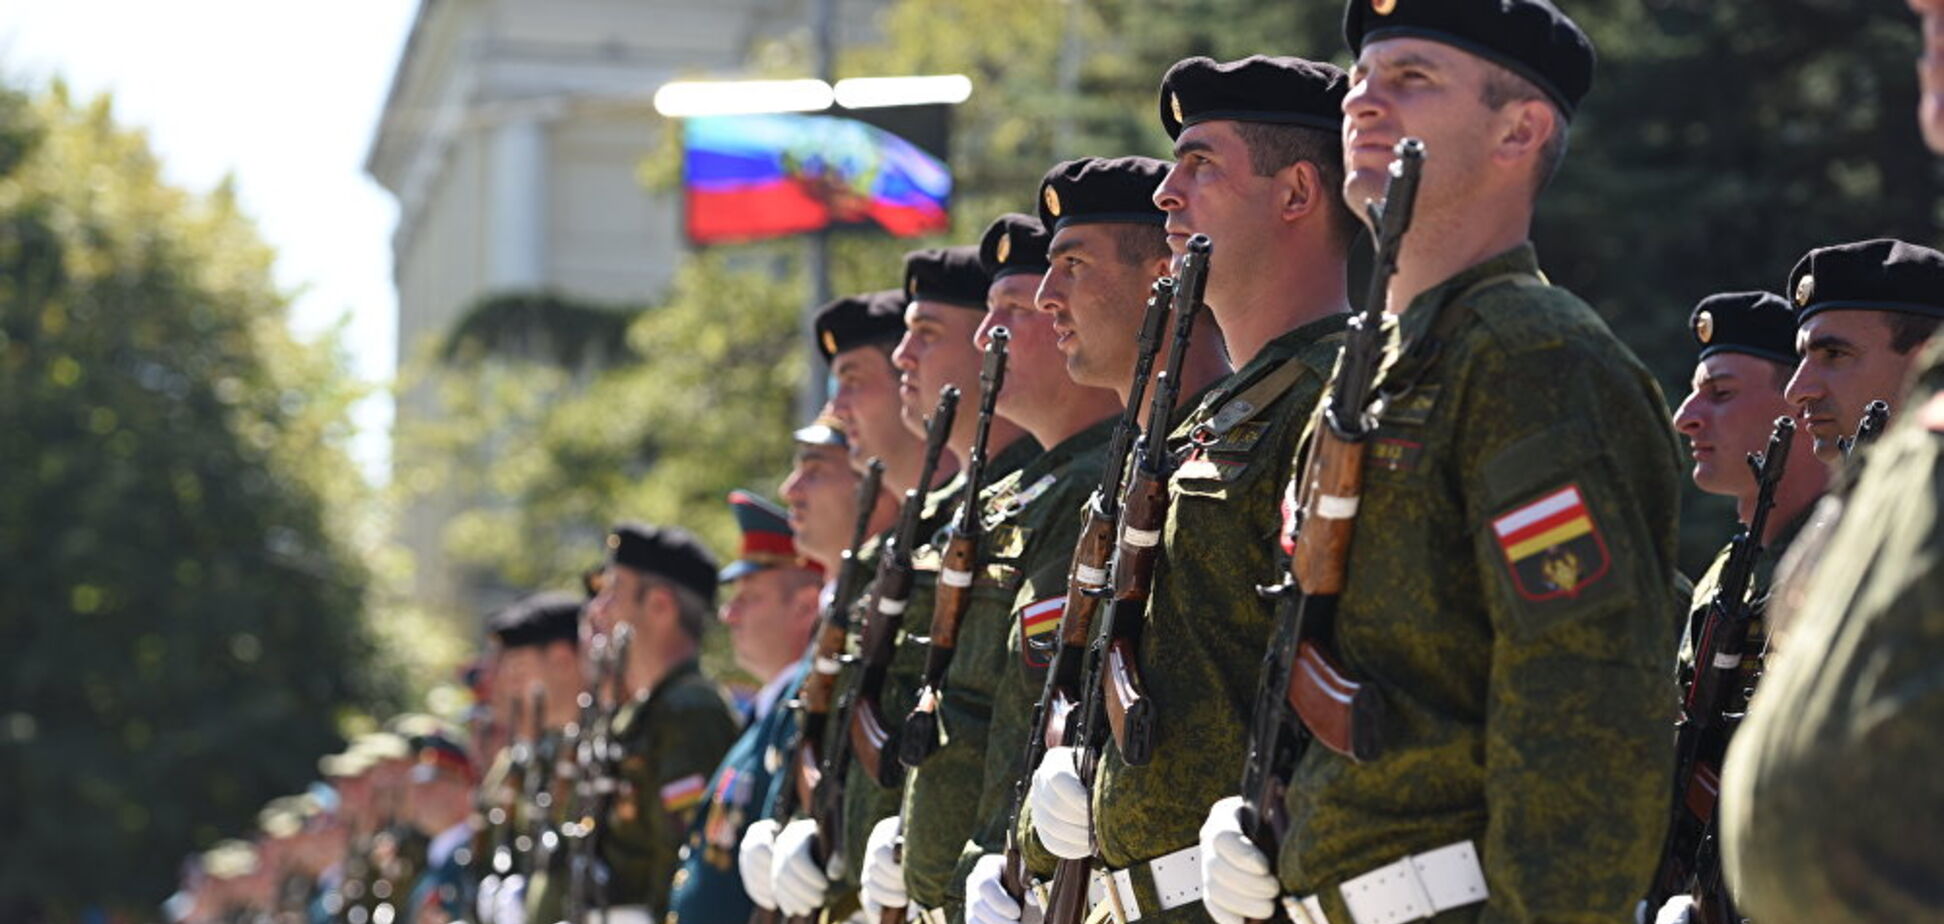 Пополнение для армии Путина: генерал пояснил, зачем ему южноосетинцы